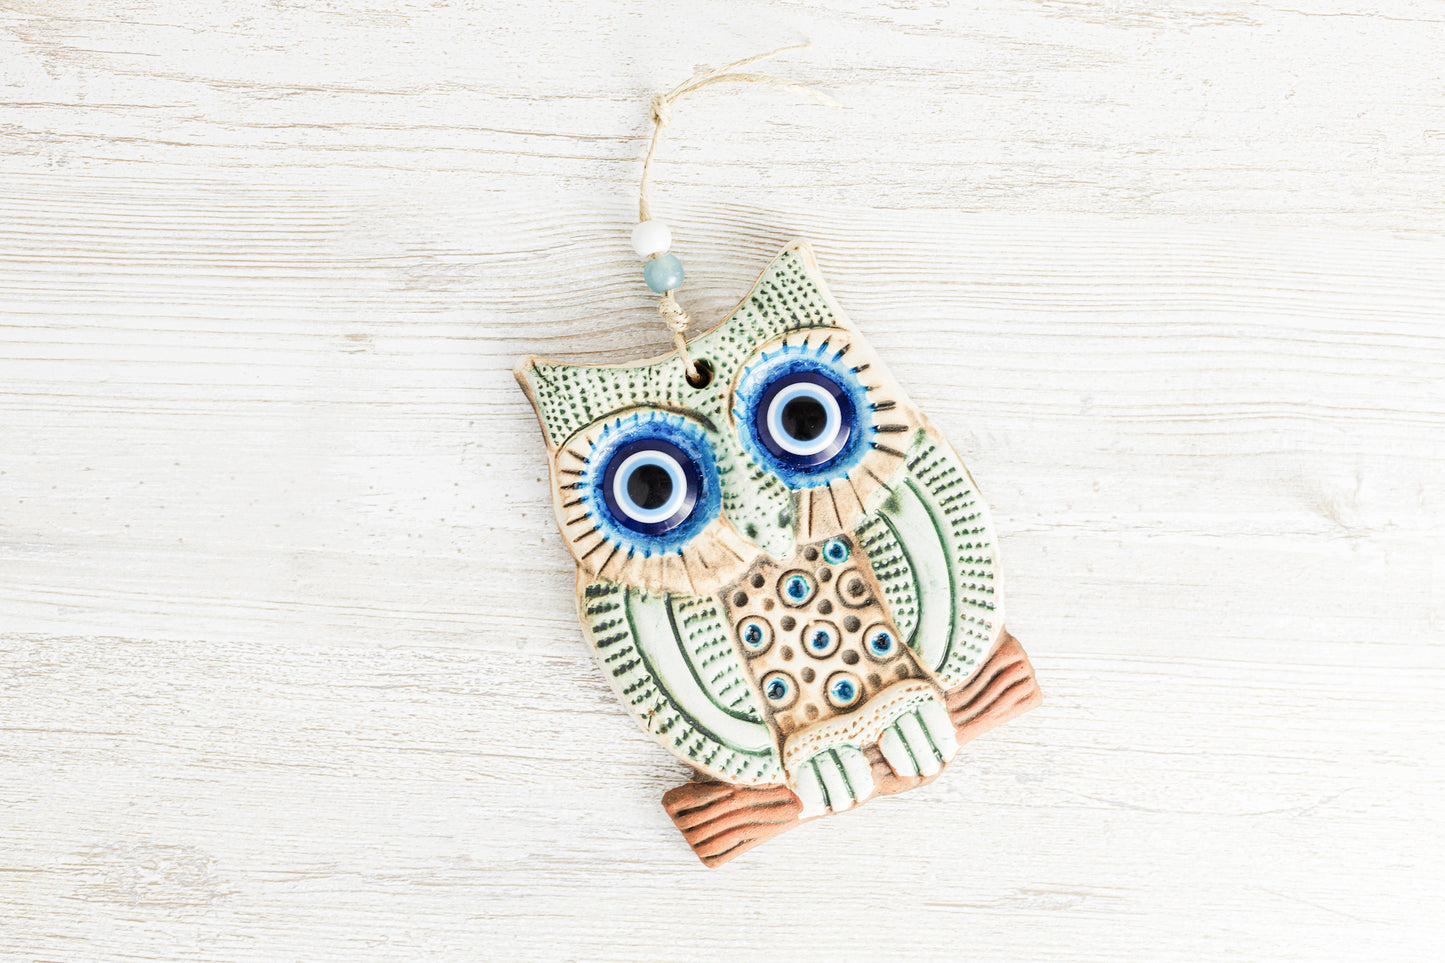 Handmade Ceramic Art Good Luck Charm Owl Design